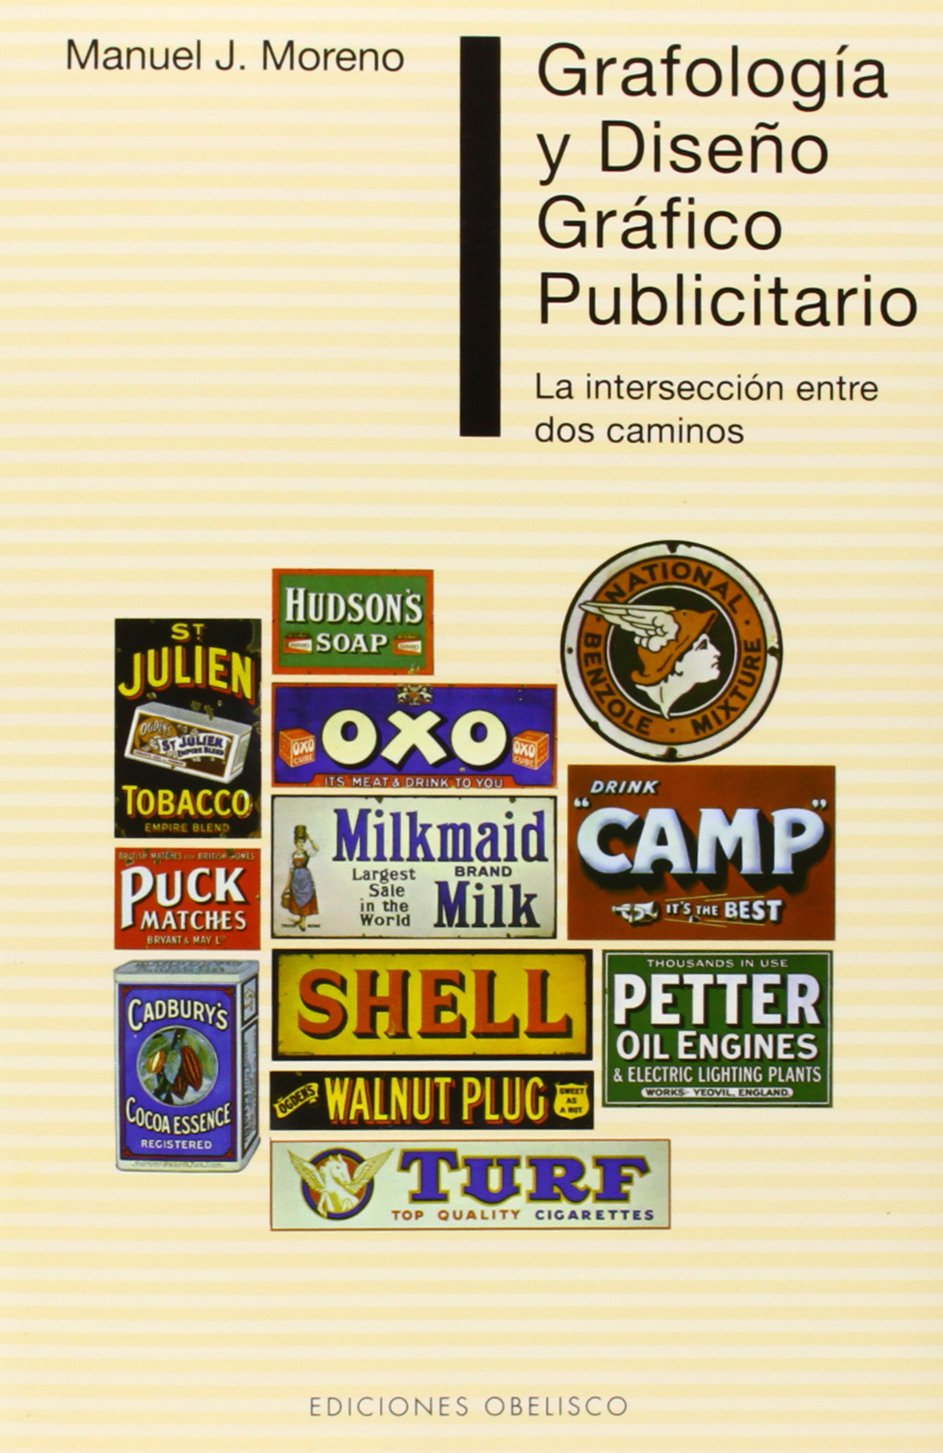 El libro Grafología y Diseño Gráfico Publicitario de de Manuel J. Moreno es una guía que analiza como escoger la mejor tipología para los productos.